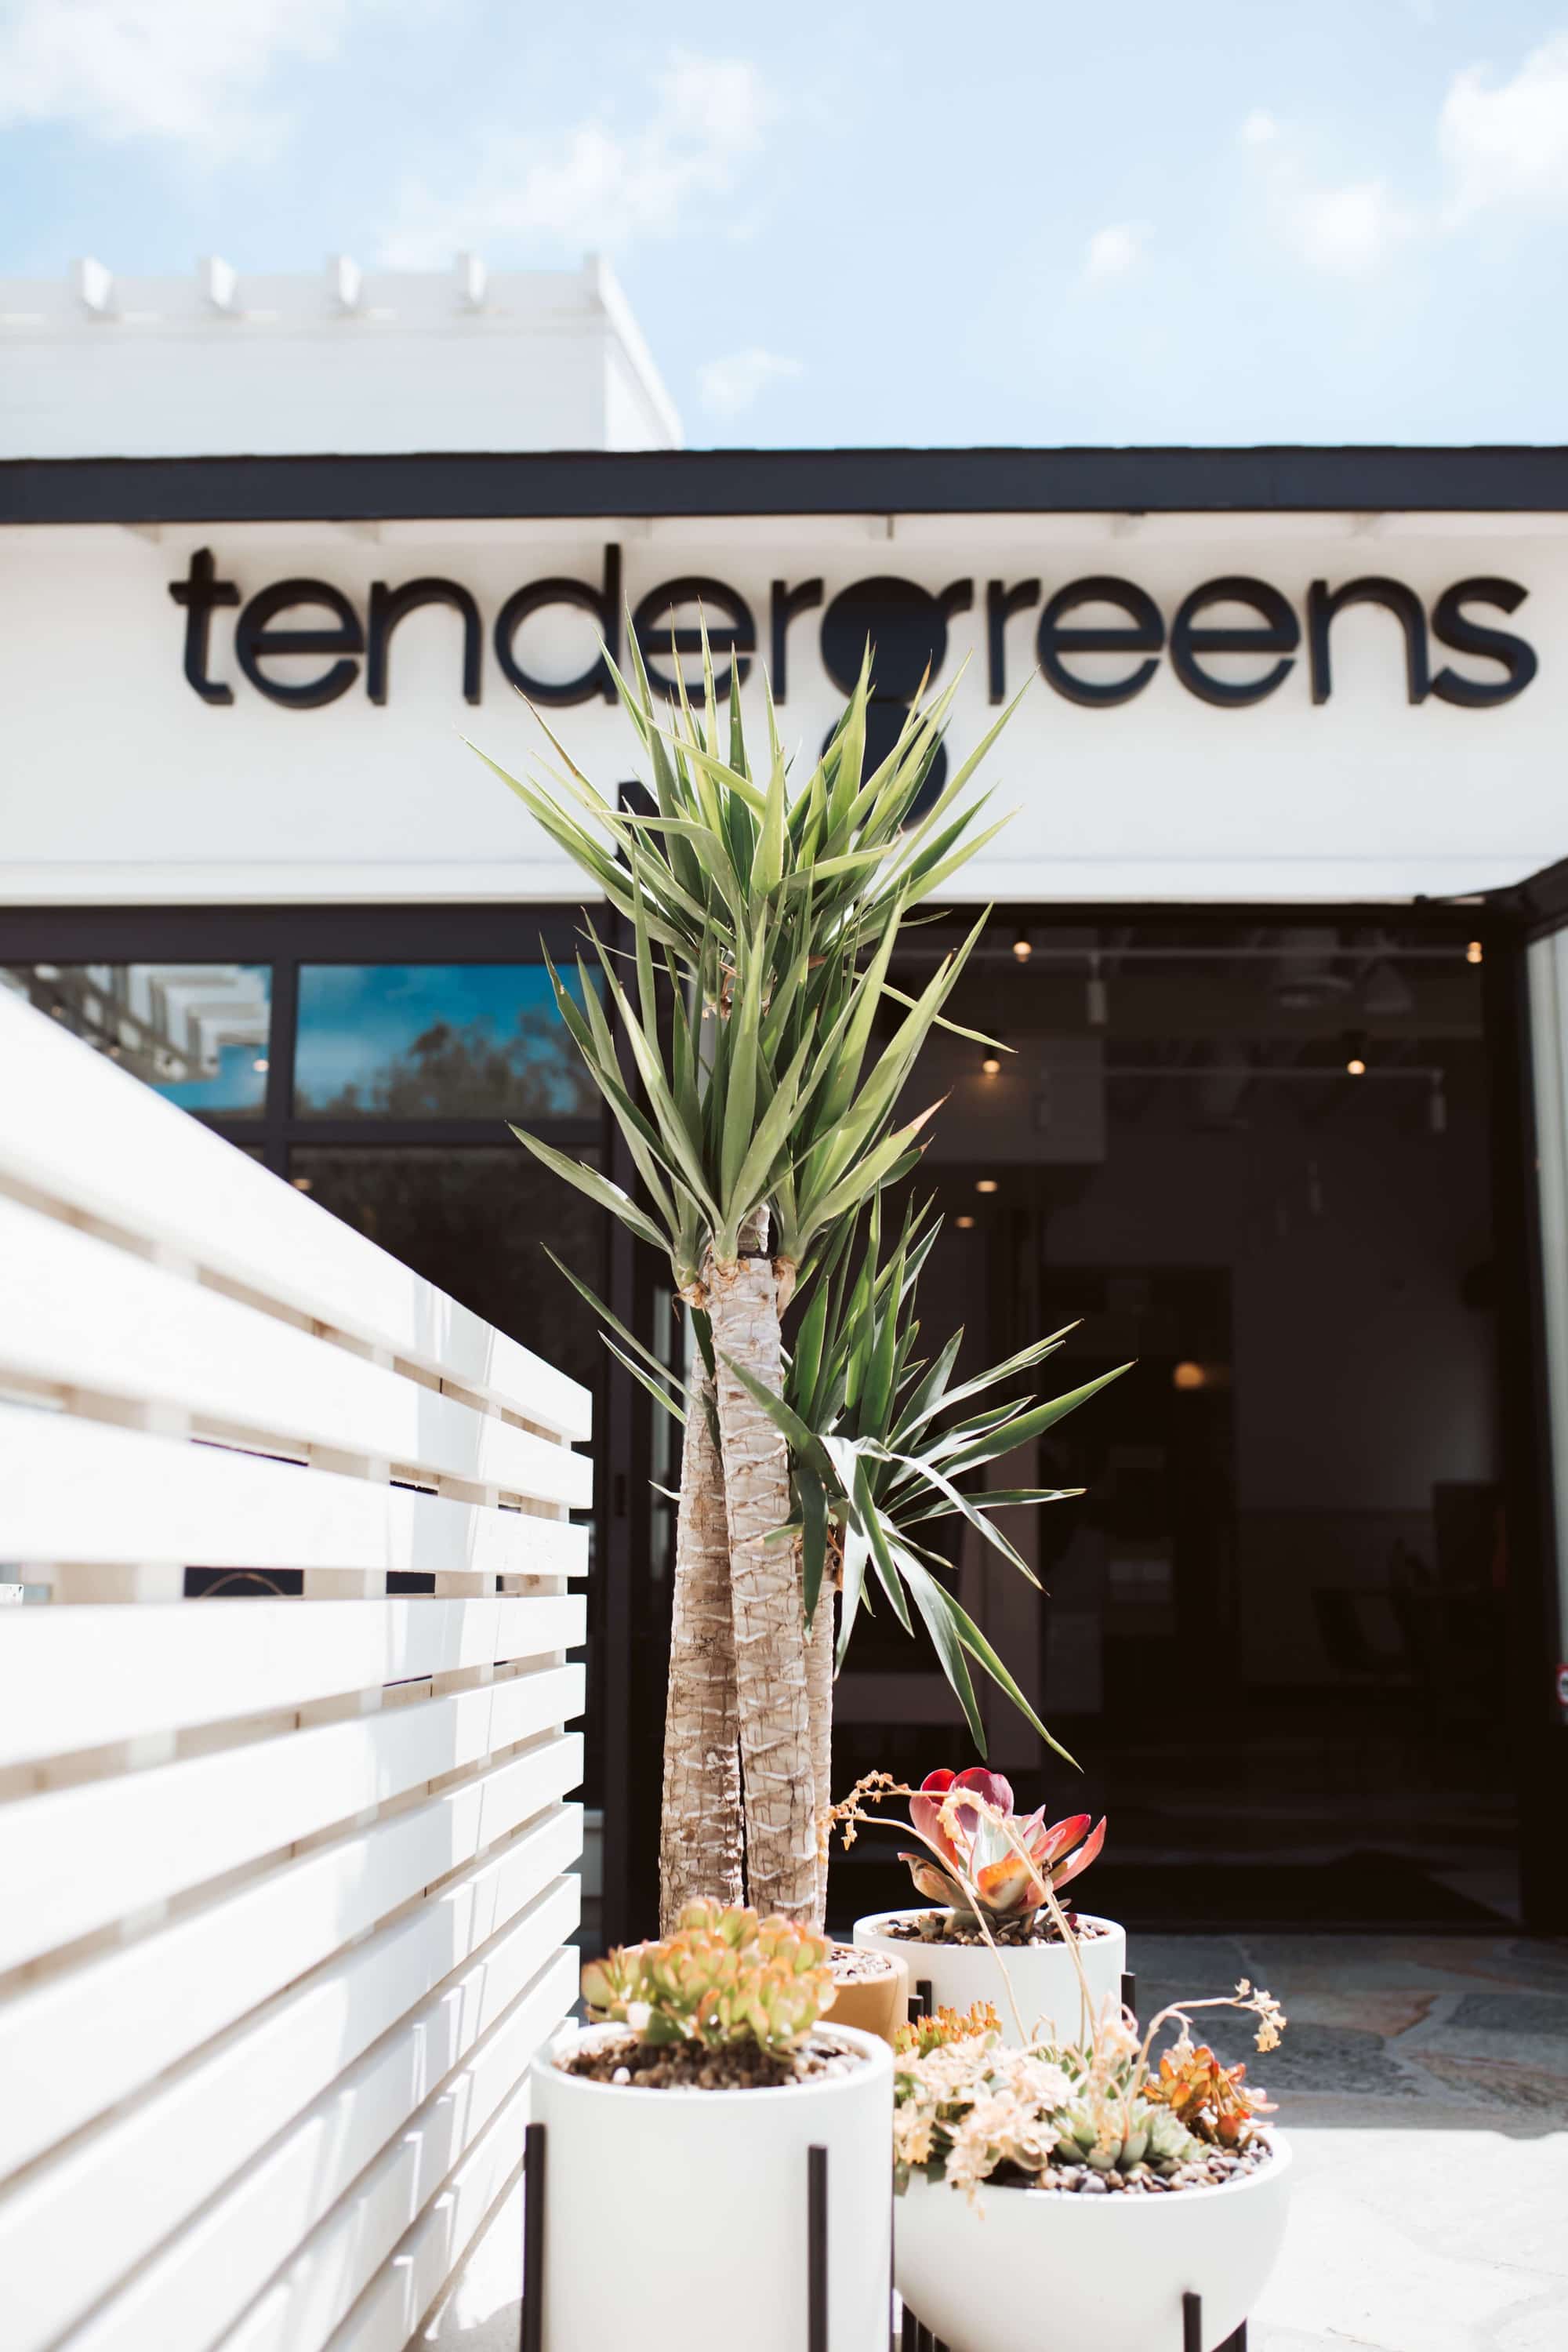 tender greens storefront